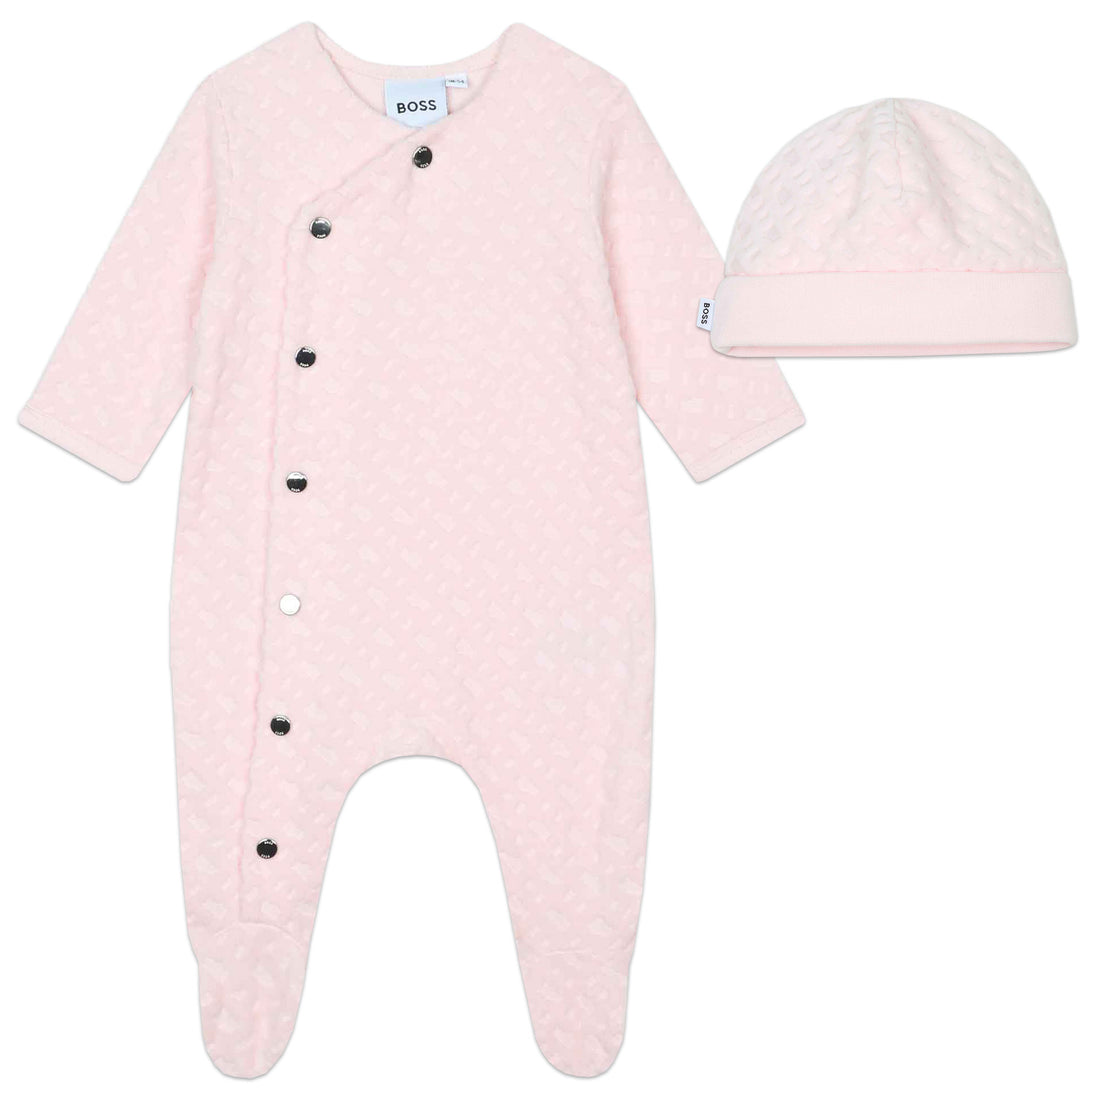 Hugo Boss Pyjamas + Pull On Hat Set Style: J98448